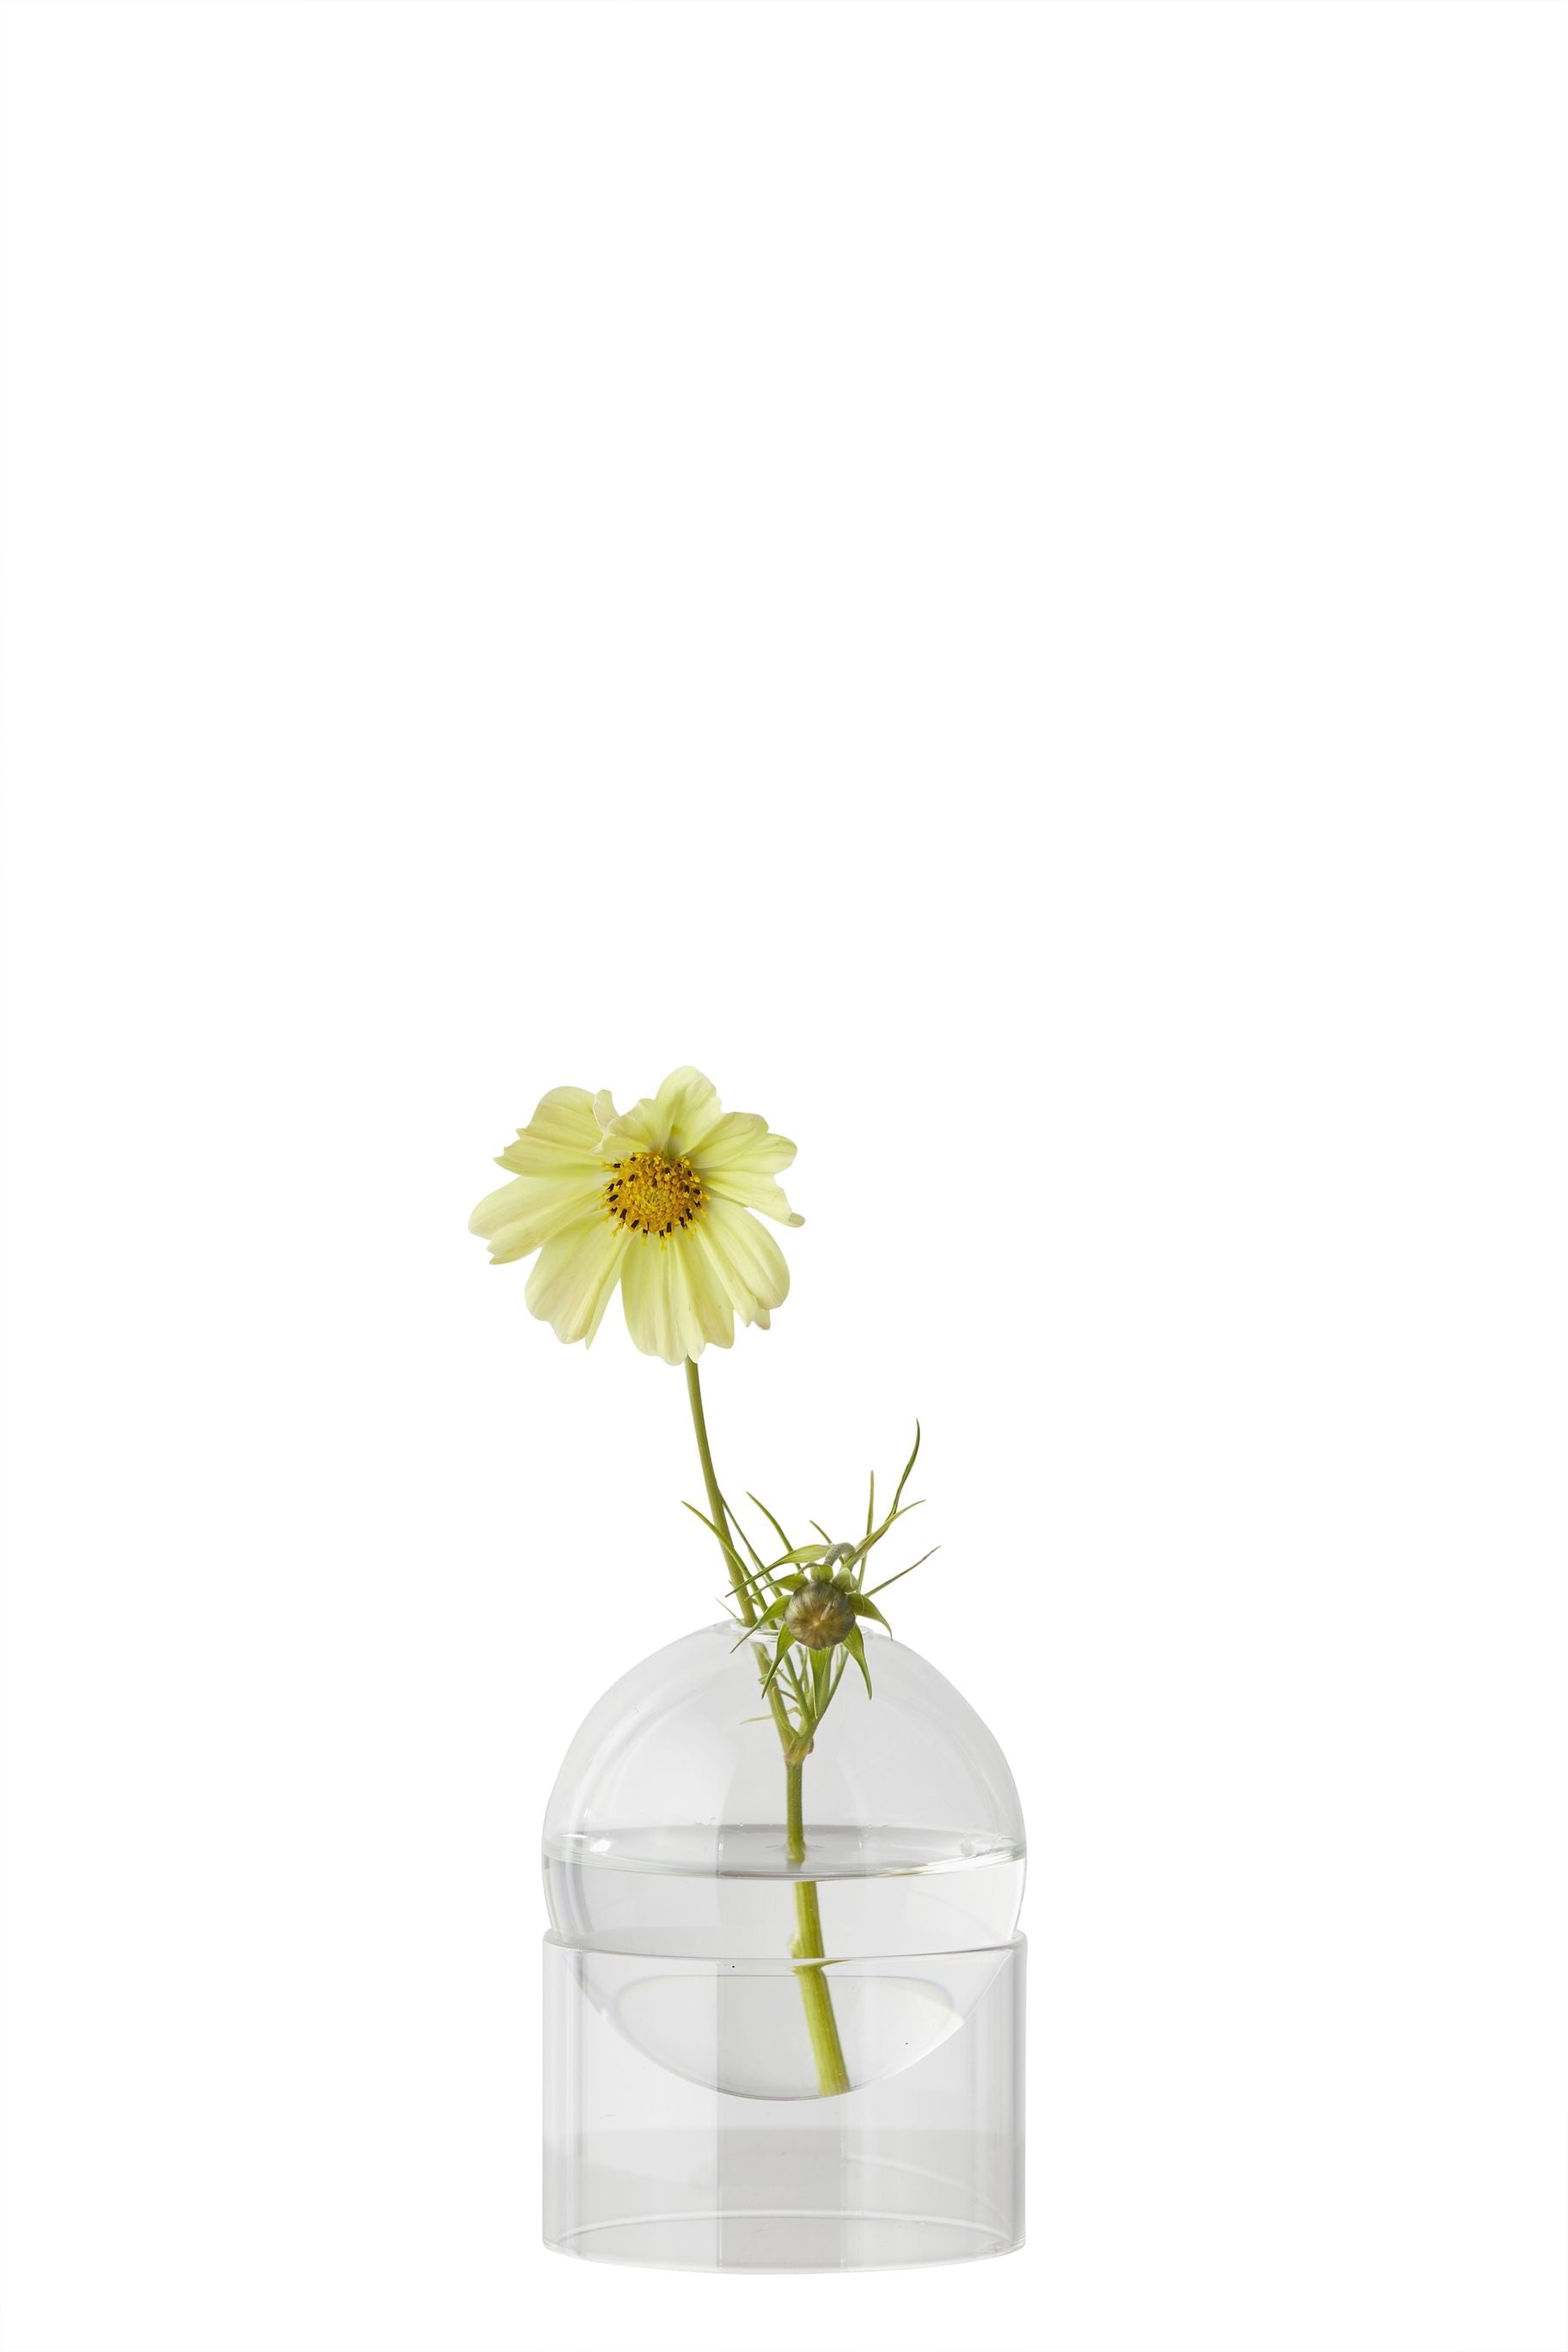 Estudio sobre el jarrón de burbujas de flores de pie de 10 cm, transparente